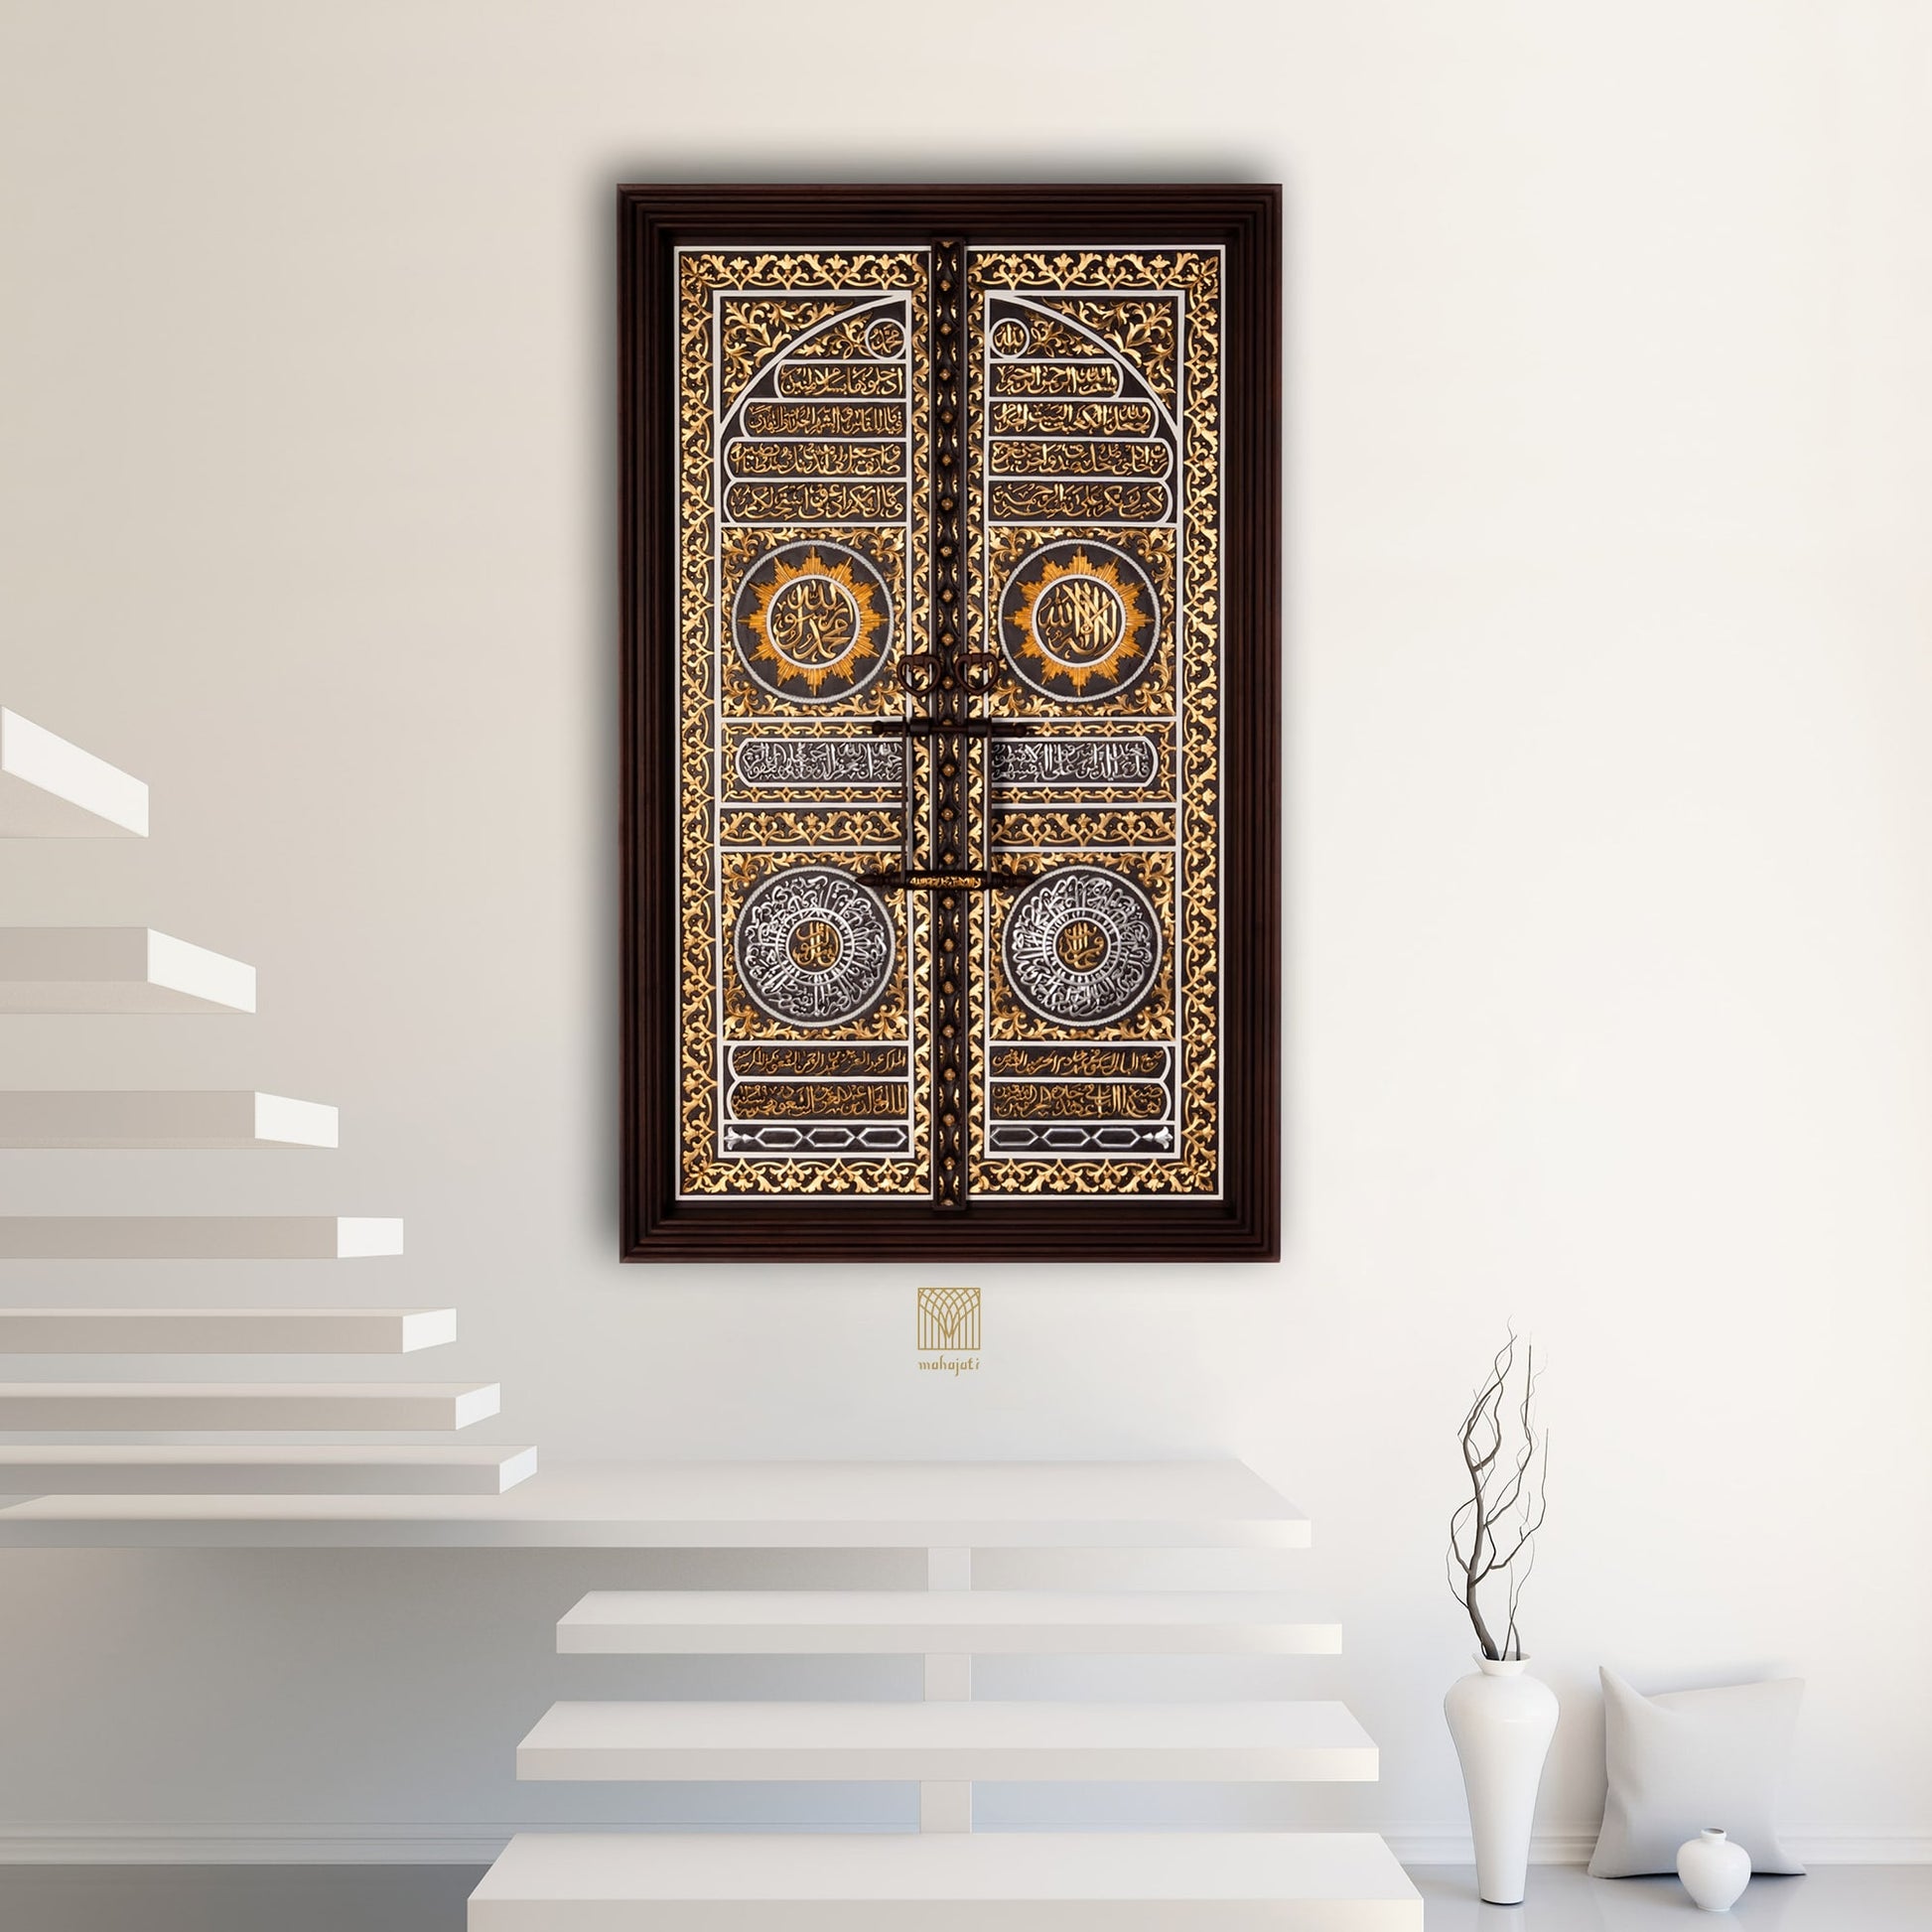 Mahajati Door of Kaaba Wall Art, Islamic Decor for Living Room 